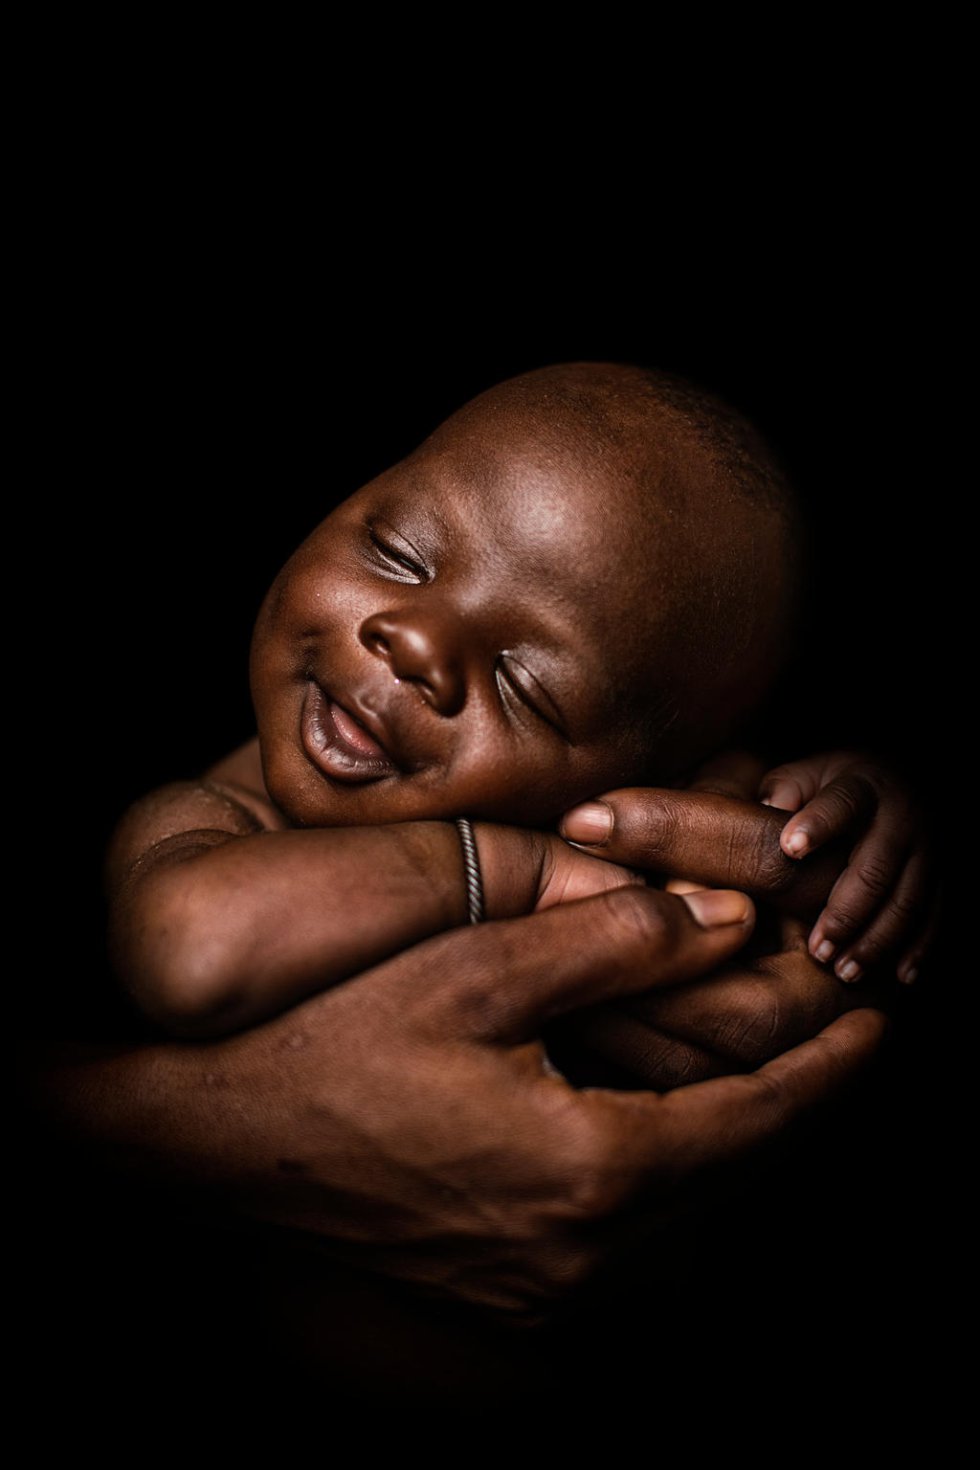 Youssouf Sanogo. Malí. Con 24 días, duerme acunado por su madre el 8 de marzo de 2018 en el Centro de salud pública de Koumatou (Malí). El niño pesó 3,3 kilos al nacer, pero estaba sano y evitó infecciones ya que el centro de salud disponía de agua potable. Youssouf es el primer hijo de Hawa Diawara, de 18 años. "Todo salió bien. Llegué al centro de salud cuatro días antes de dar a luz. Sentí un fuerte dolor en el abdomen, pero luego el parto fue rápido. Después del nacimiento, me lavaron con agua no contaminada. Espero que Youssef me apoye hasta que muera y que crezca sano. Una buena higiene es crucial para asegurarse de que lo haga. El agua limpia, como la que uso en mi casa, la misma que la del hospital, lo ayudará a ir a la escuela". 